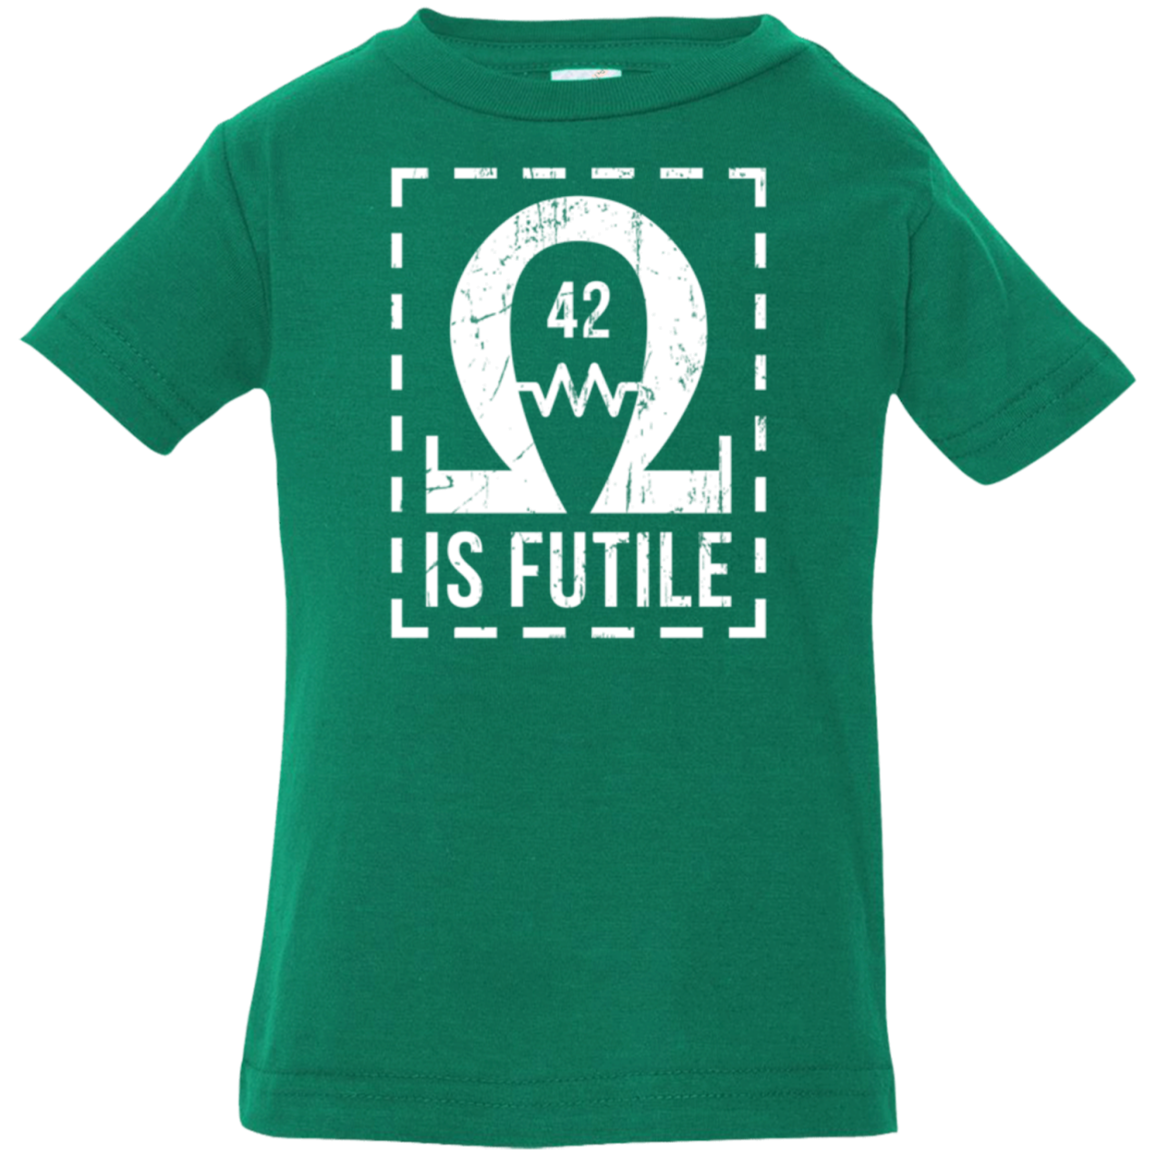 Resistance is Futile Infant Premium T-Shirt